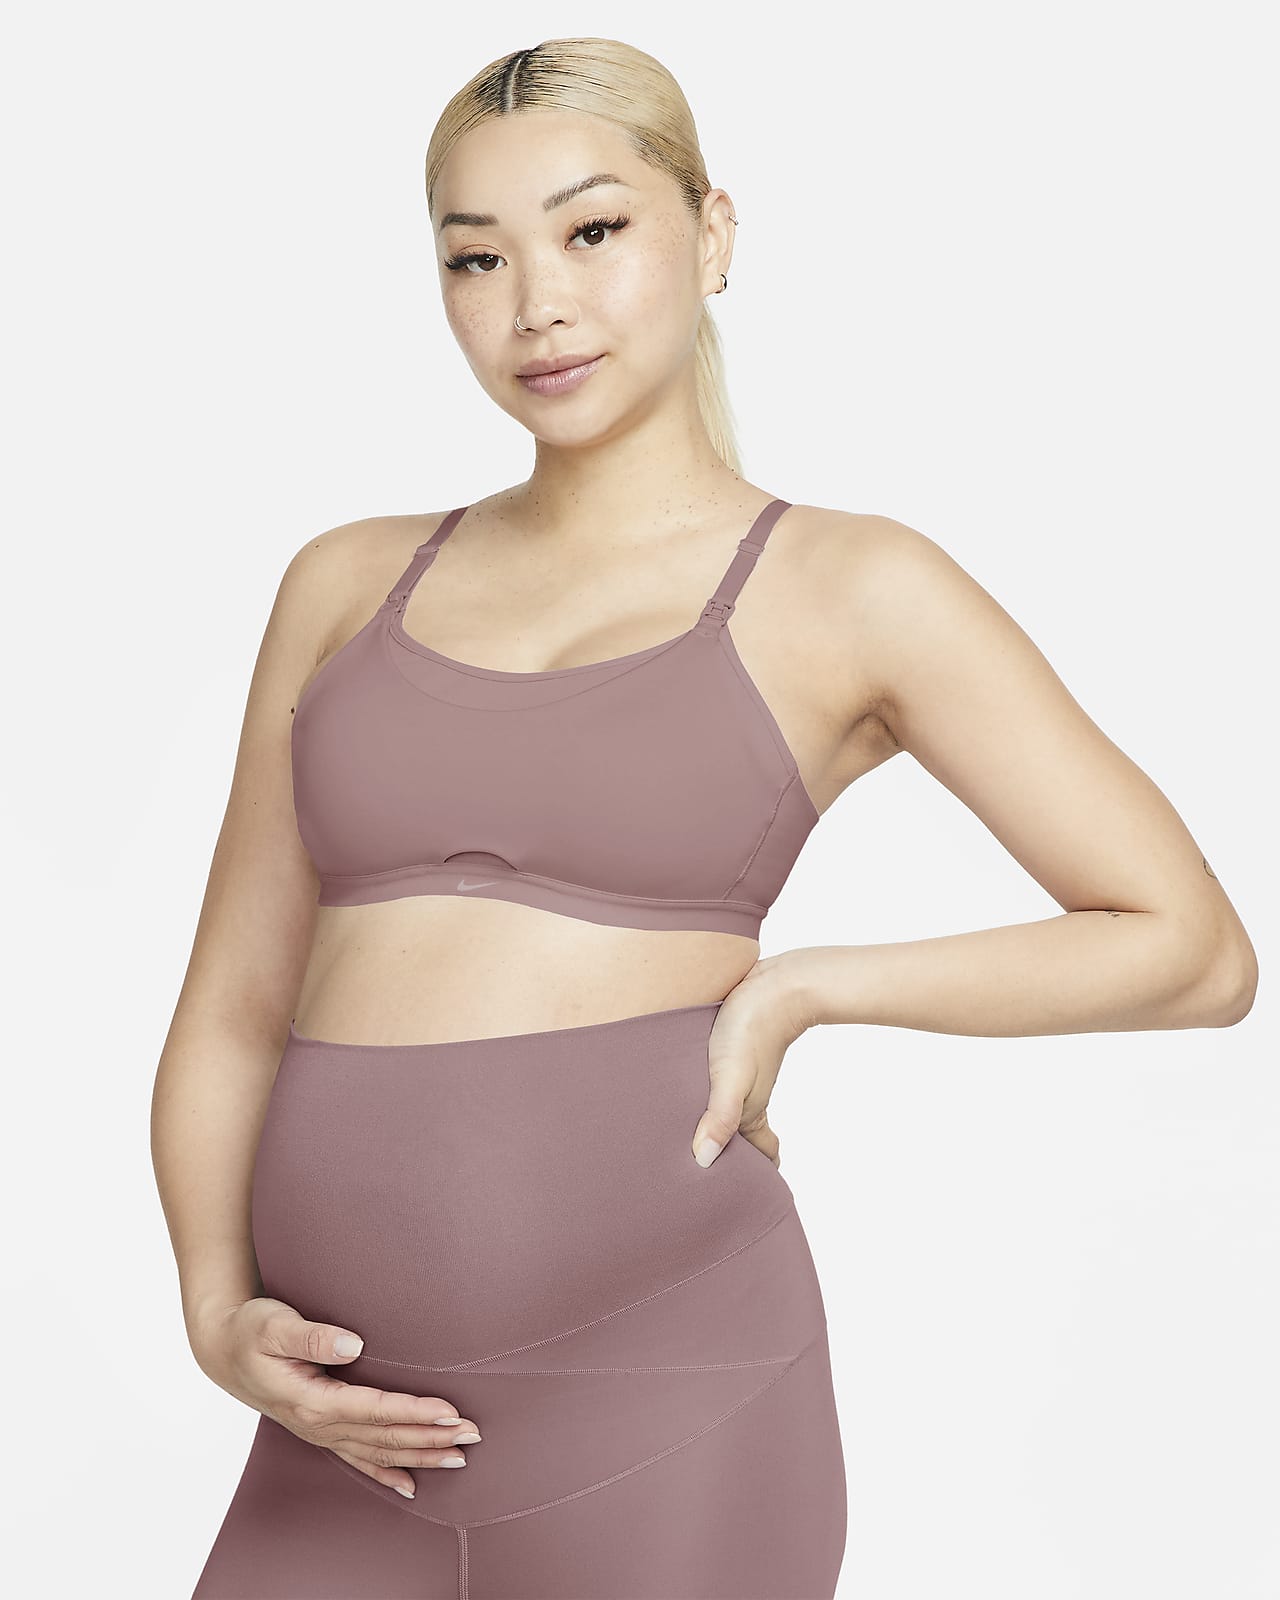 Nike Alate (M) 孕妈系列女子低强度支撑速干轻衬运动内衣